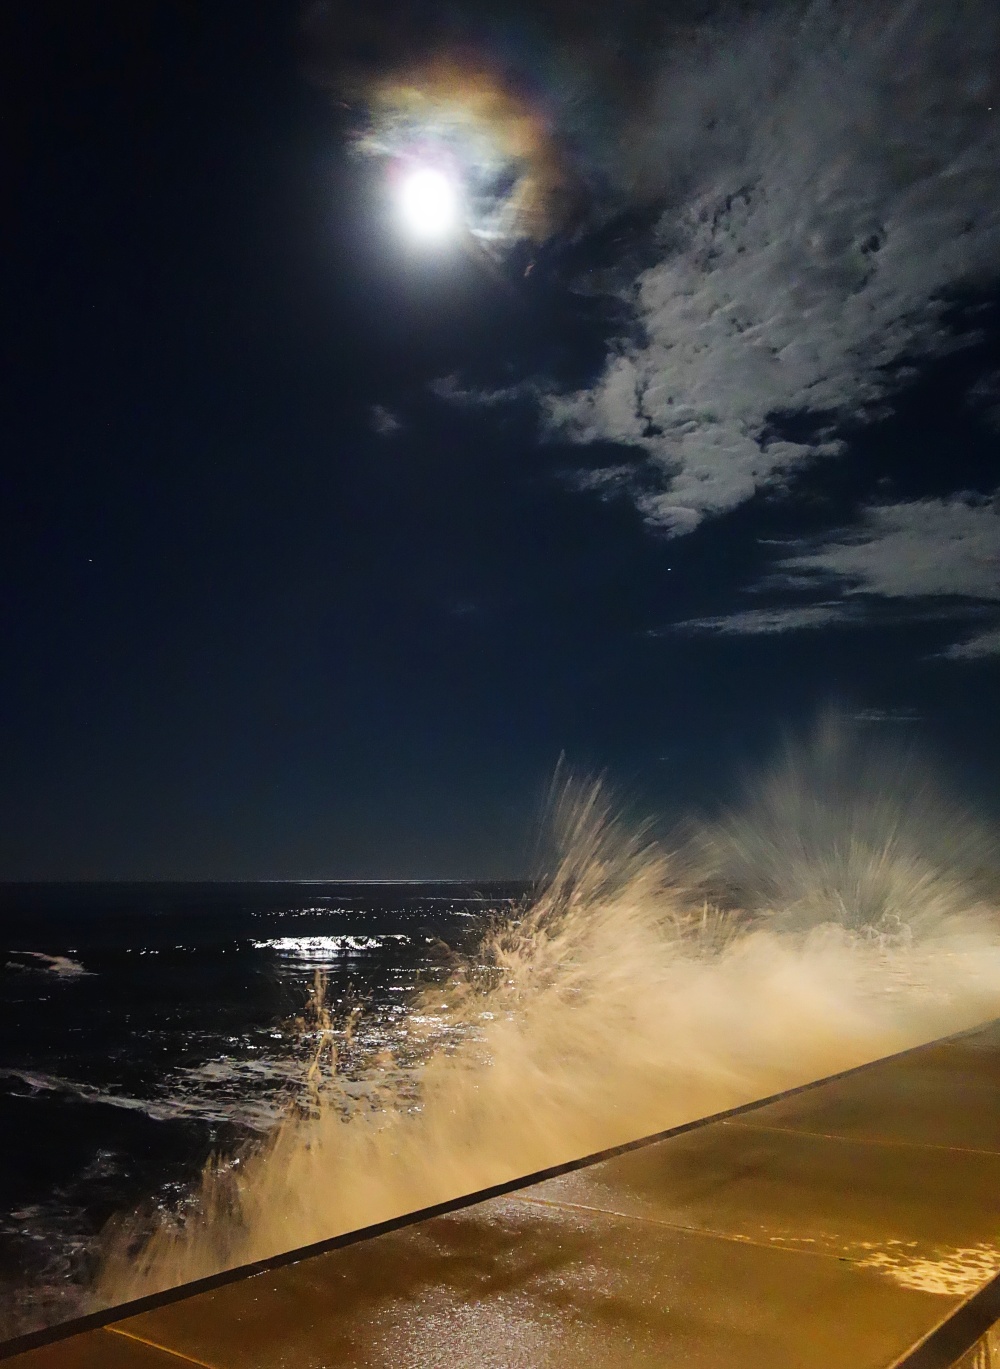 Crashing waves at night in York, Maine.